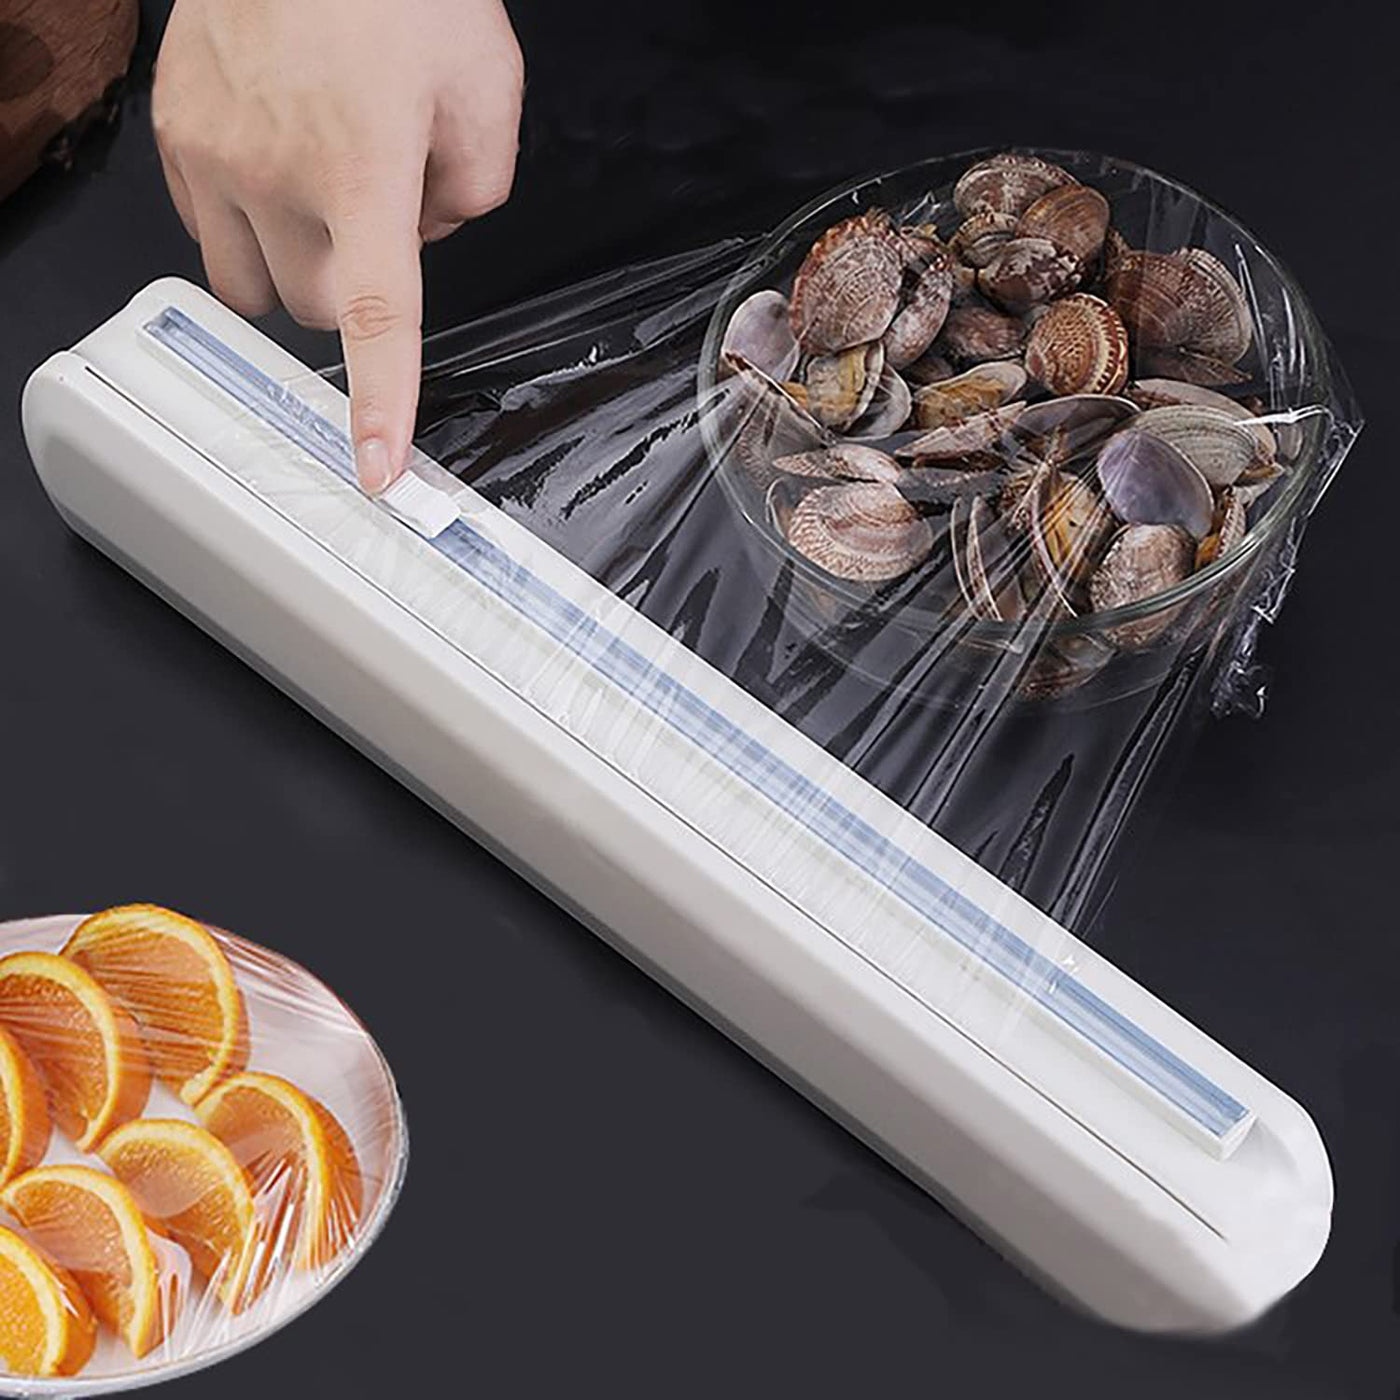 Plastic Food Wrap Dispenser